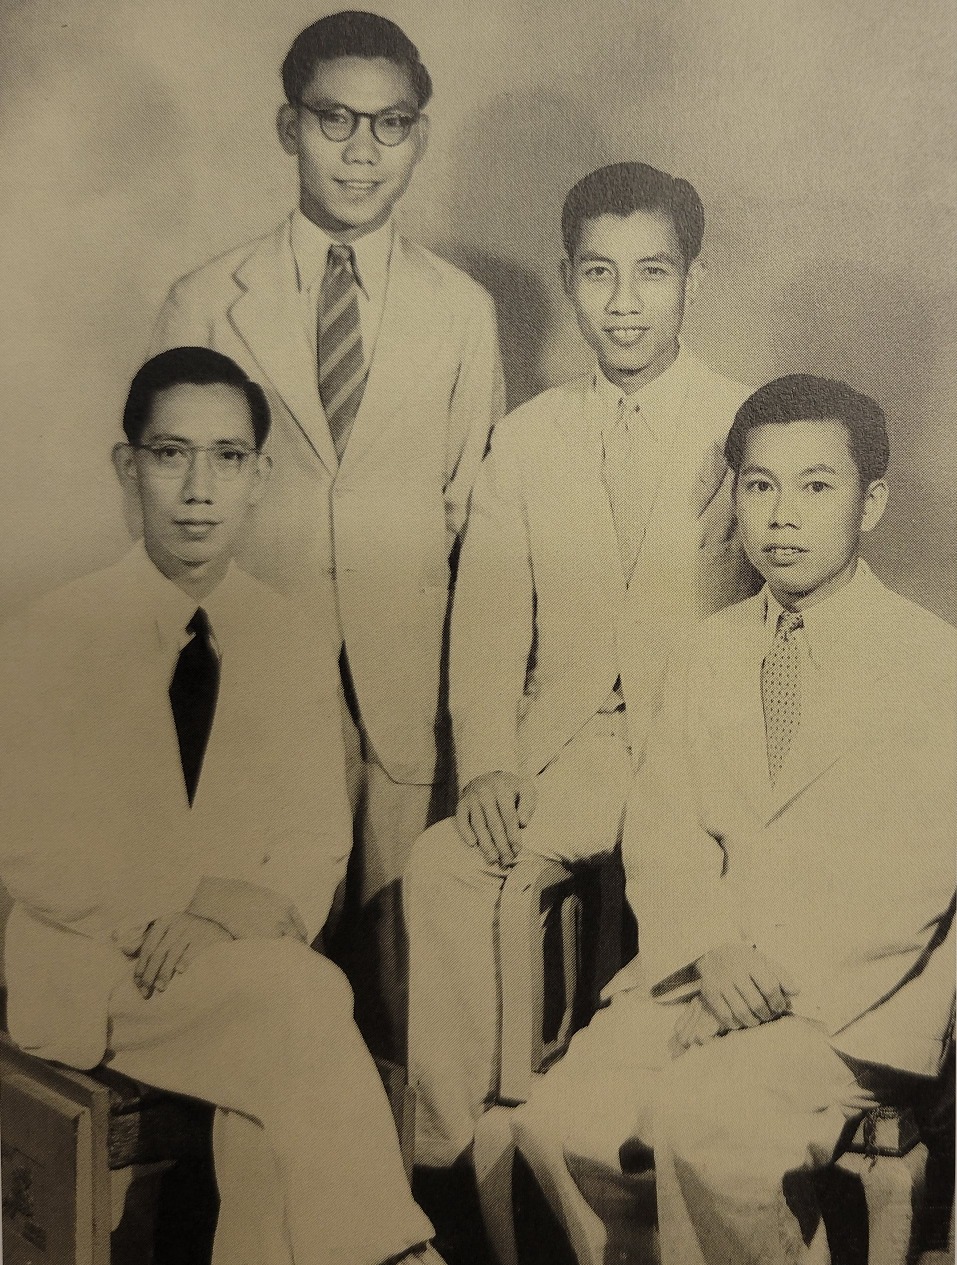 羅桂祥家族出了多位企業家，先是羅桂祥（左一）自己在1940年創辦了維他奶，而他的弟弟羅騰祥（左二）及羅芳祥（左三），後來亦分別創辦大家樂及大快活。（圖片來源：《厚生與創業：維他奶50年》）